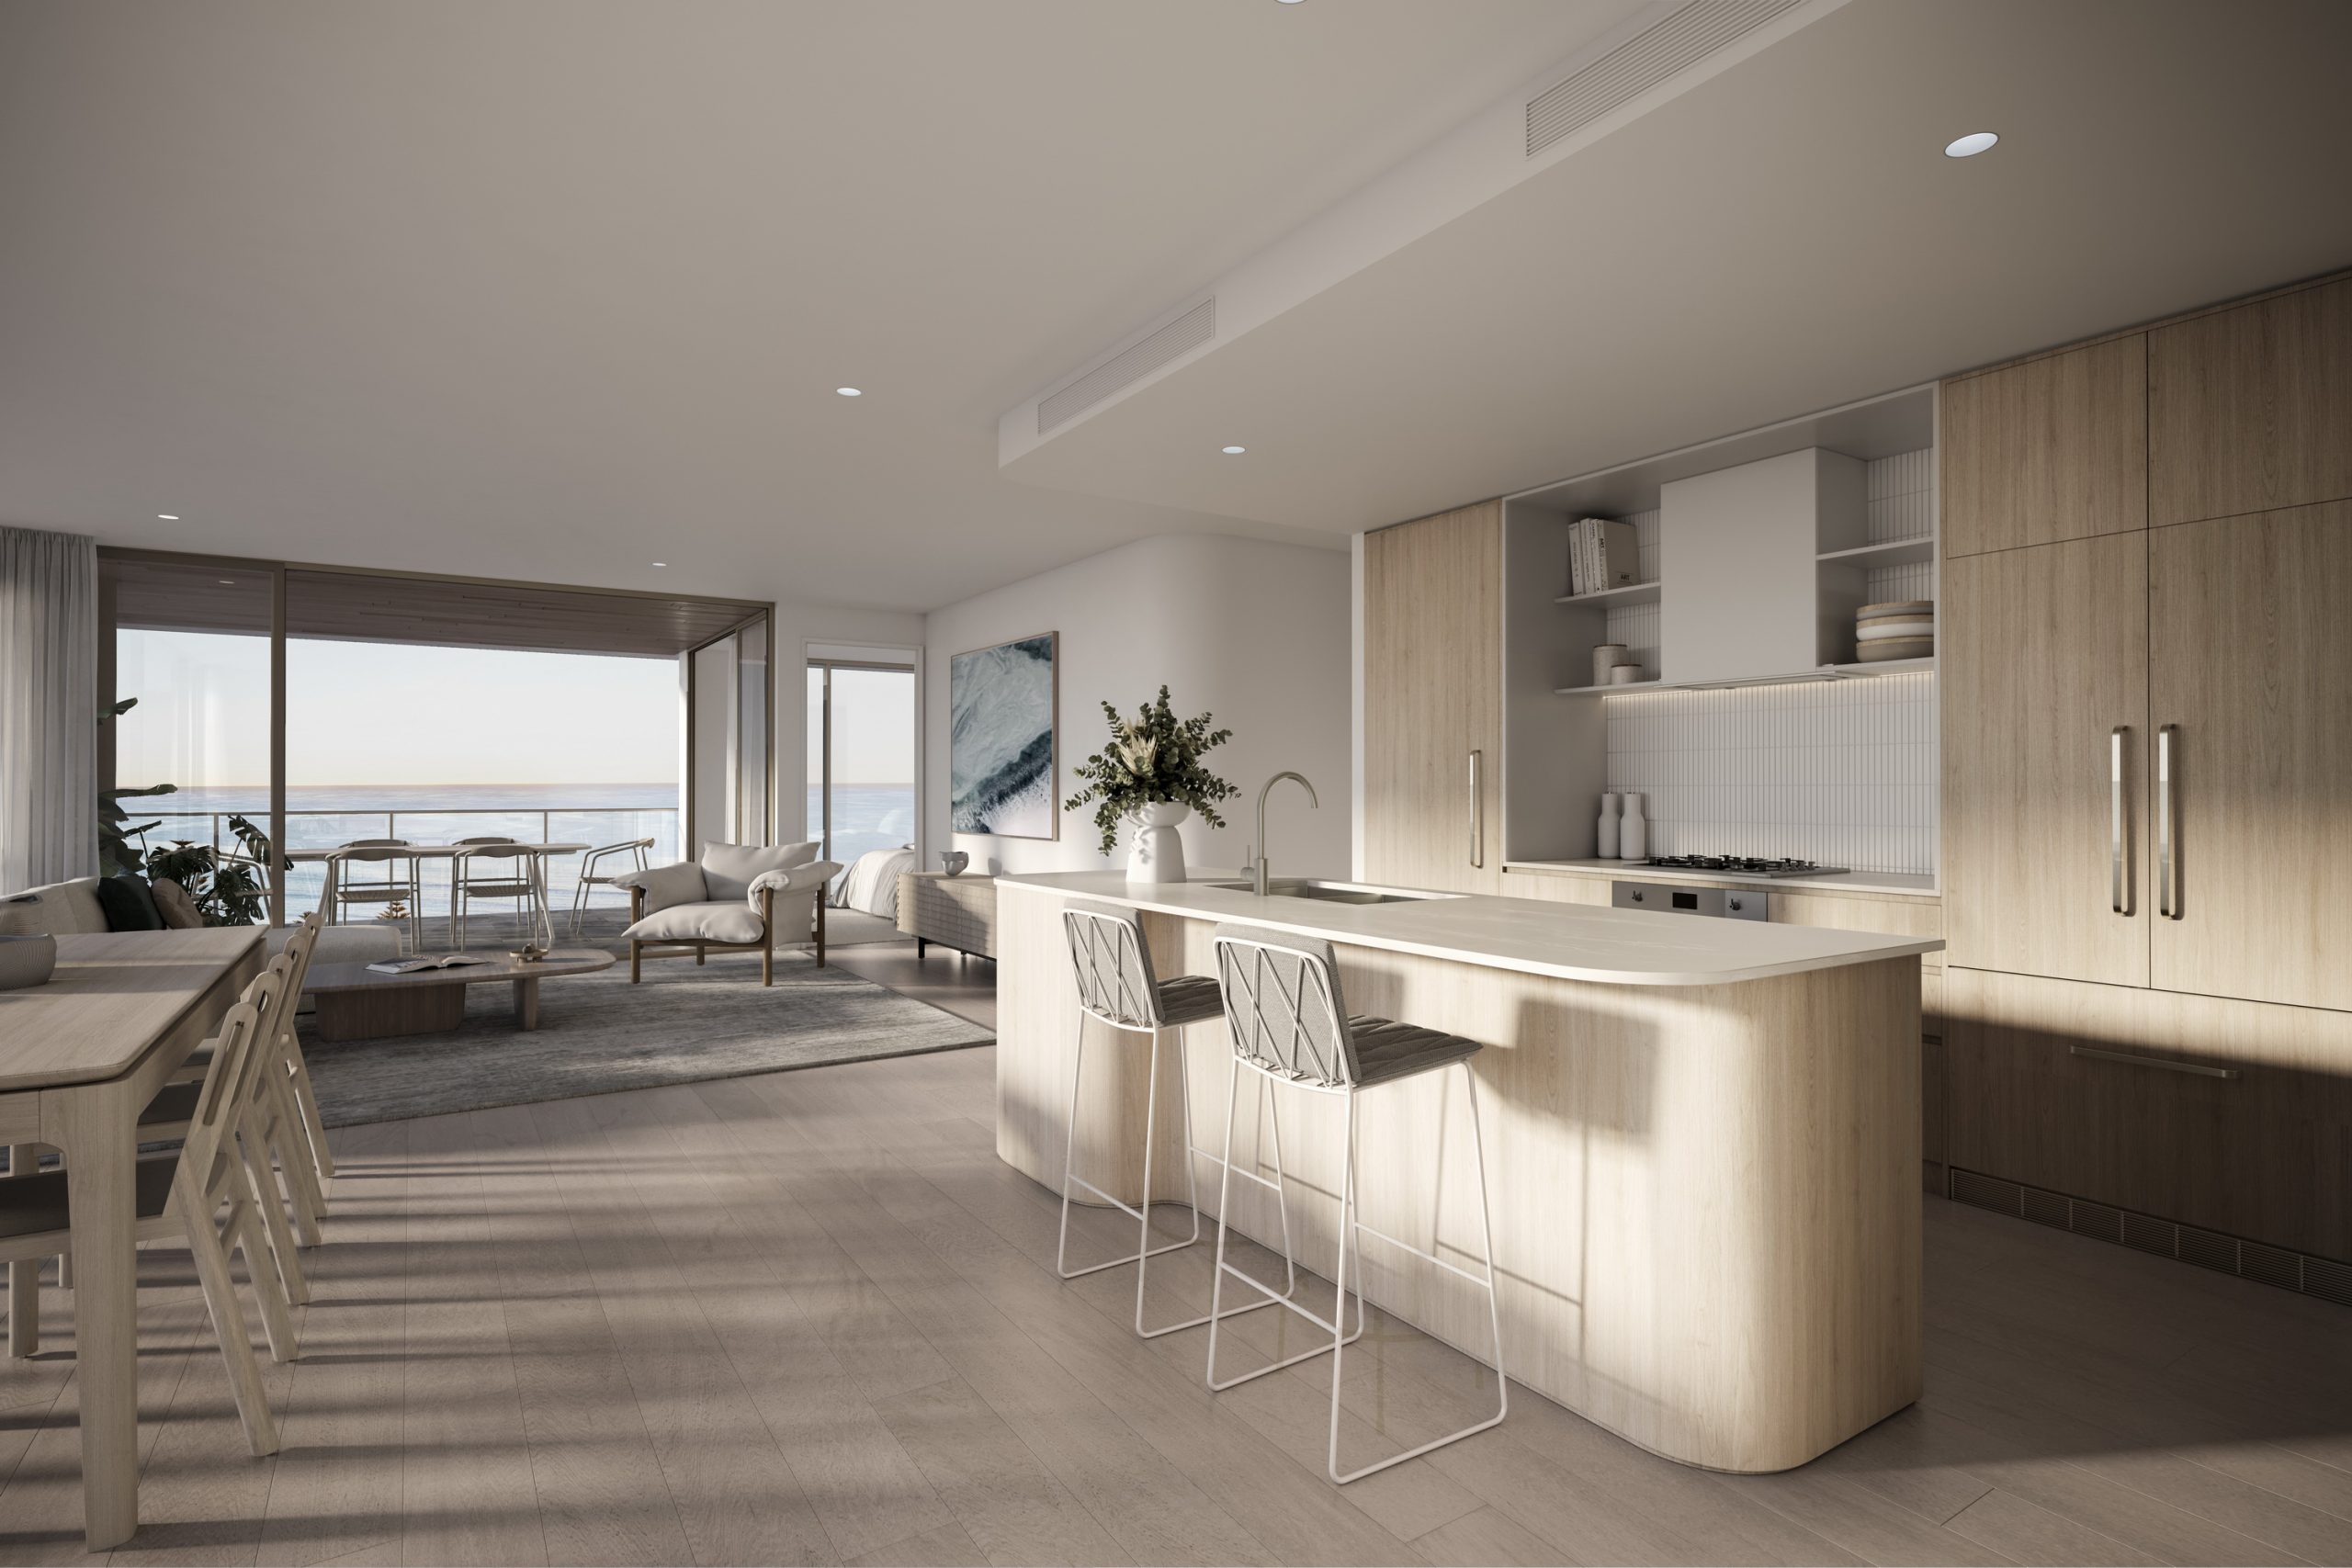 fkd-studio-architecture-render-augusta-first-ave-interior-queensland-kitchen-view-dining